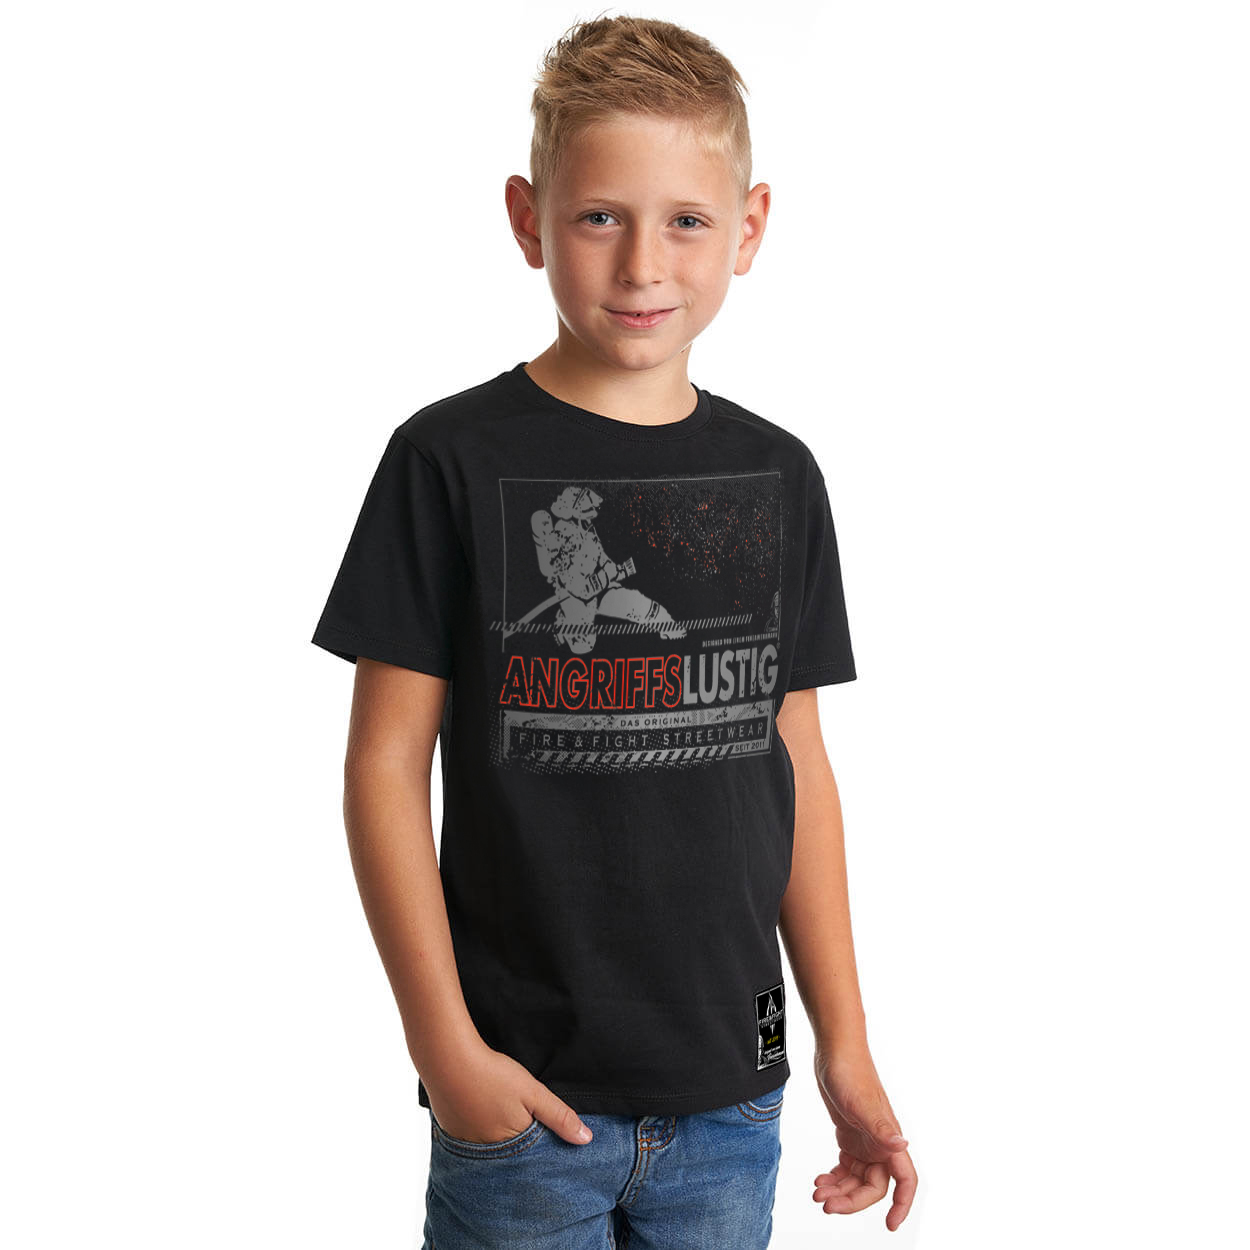 Angriffslustig® Design Kids T-Shirt